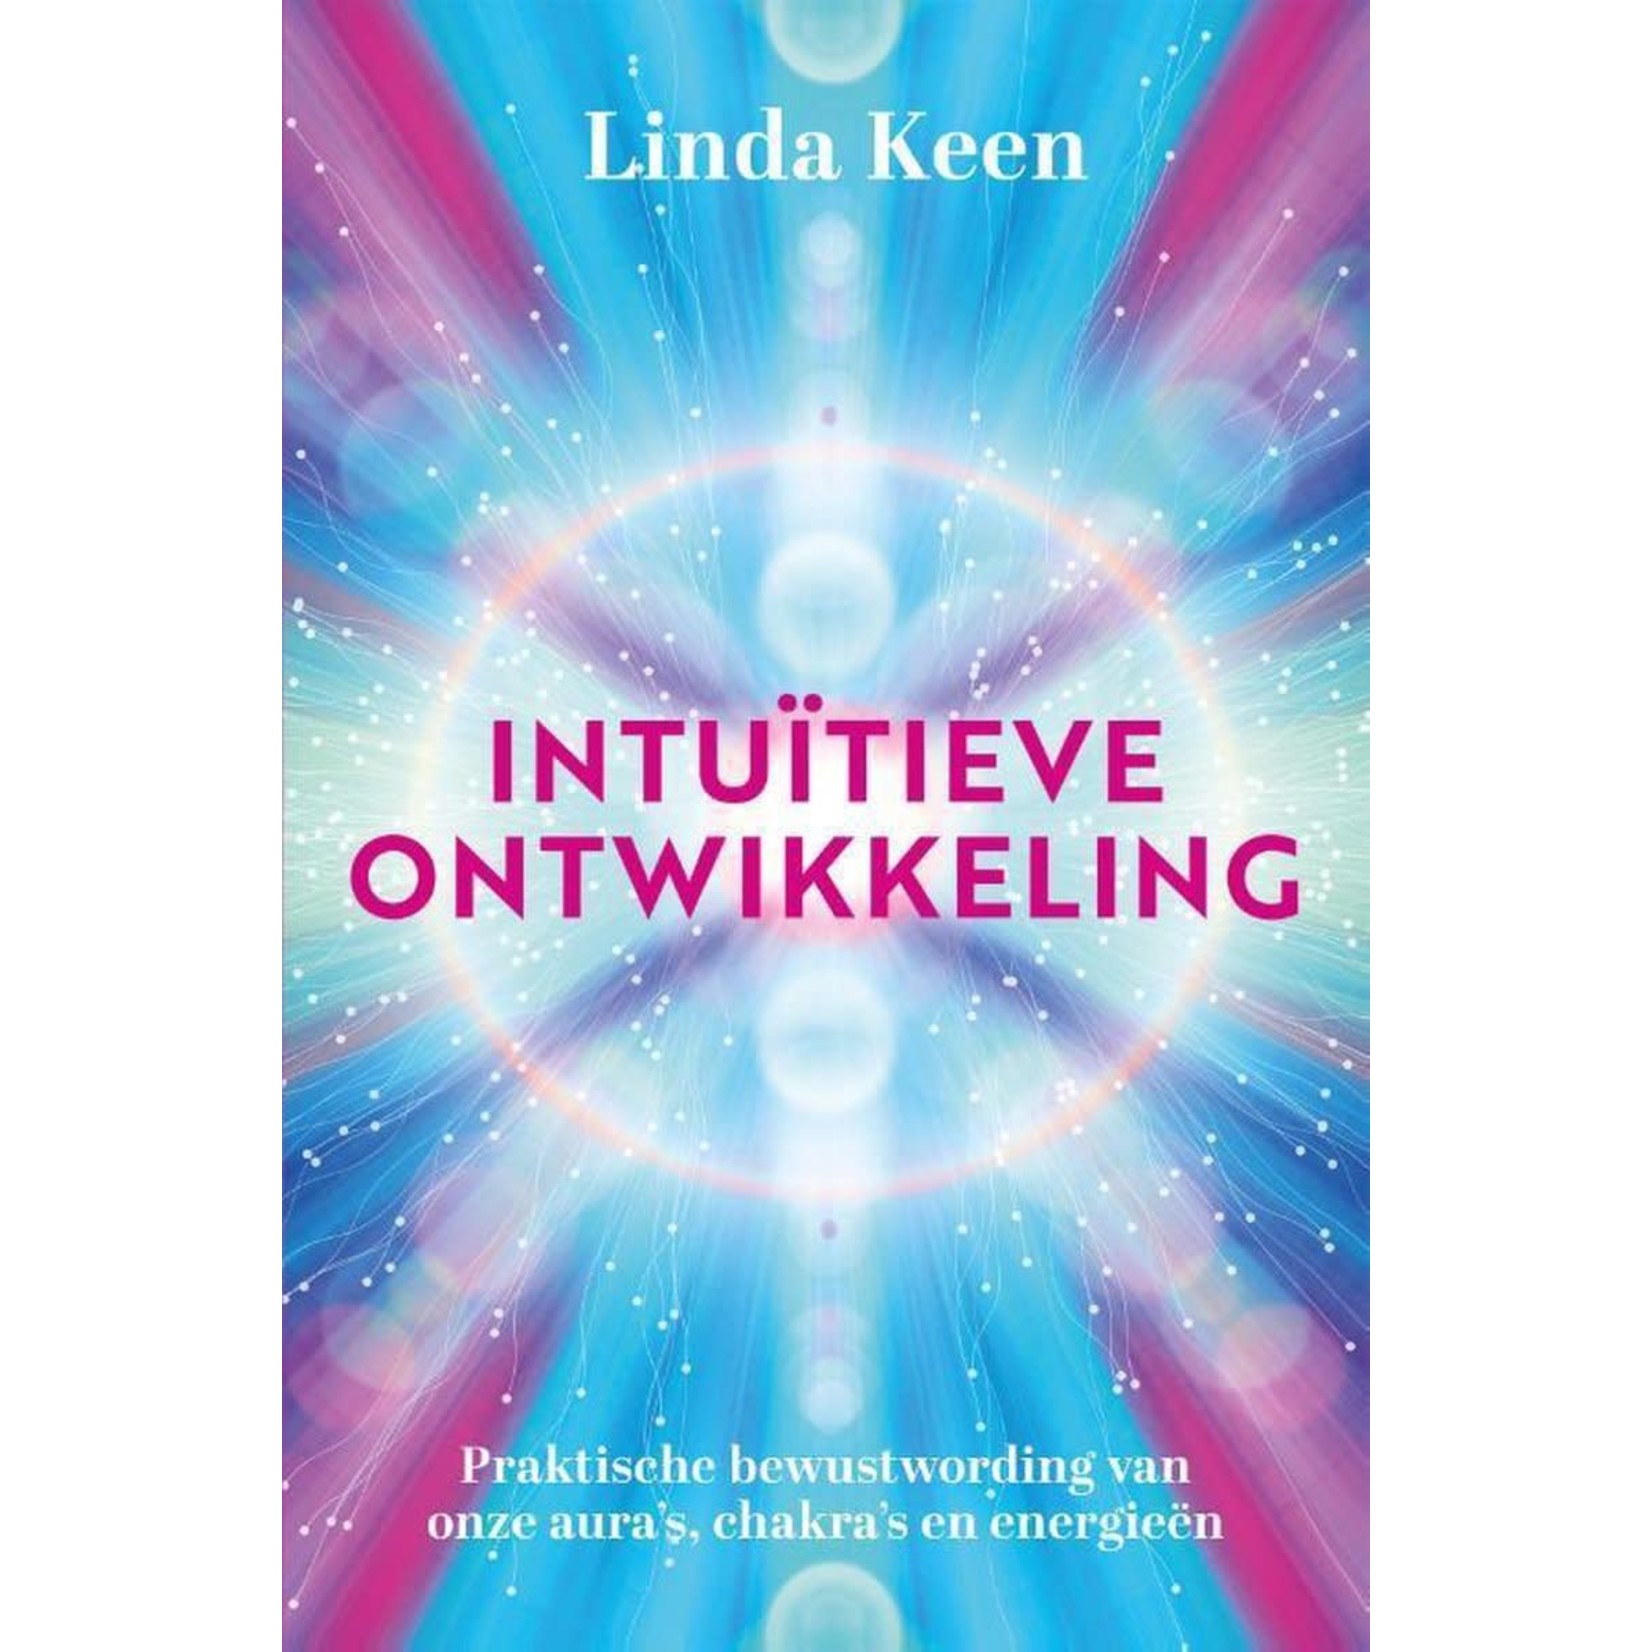 Intuïtieve ontwikkeling | Linda Keen - Praktische bewustwording van onze aura's, chakra's en energieën